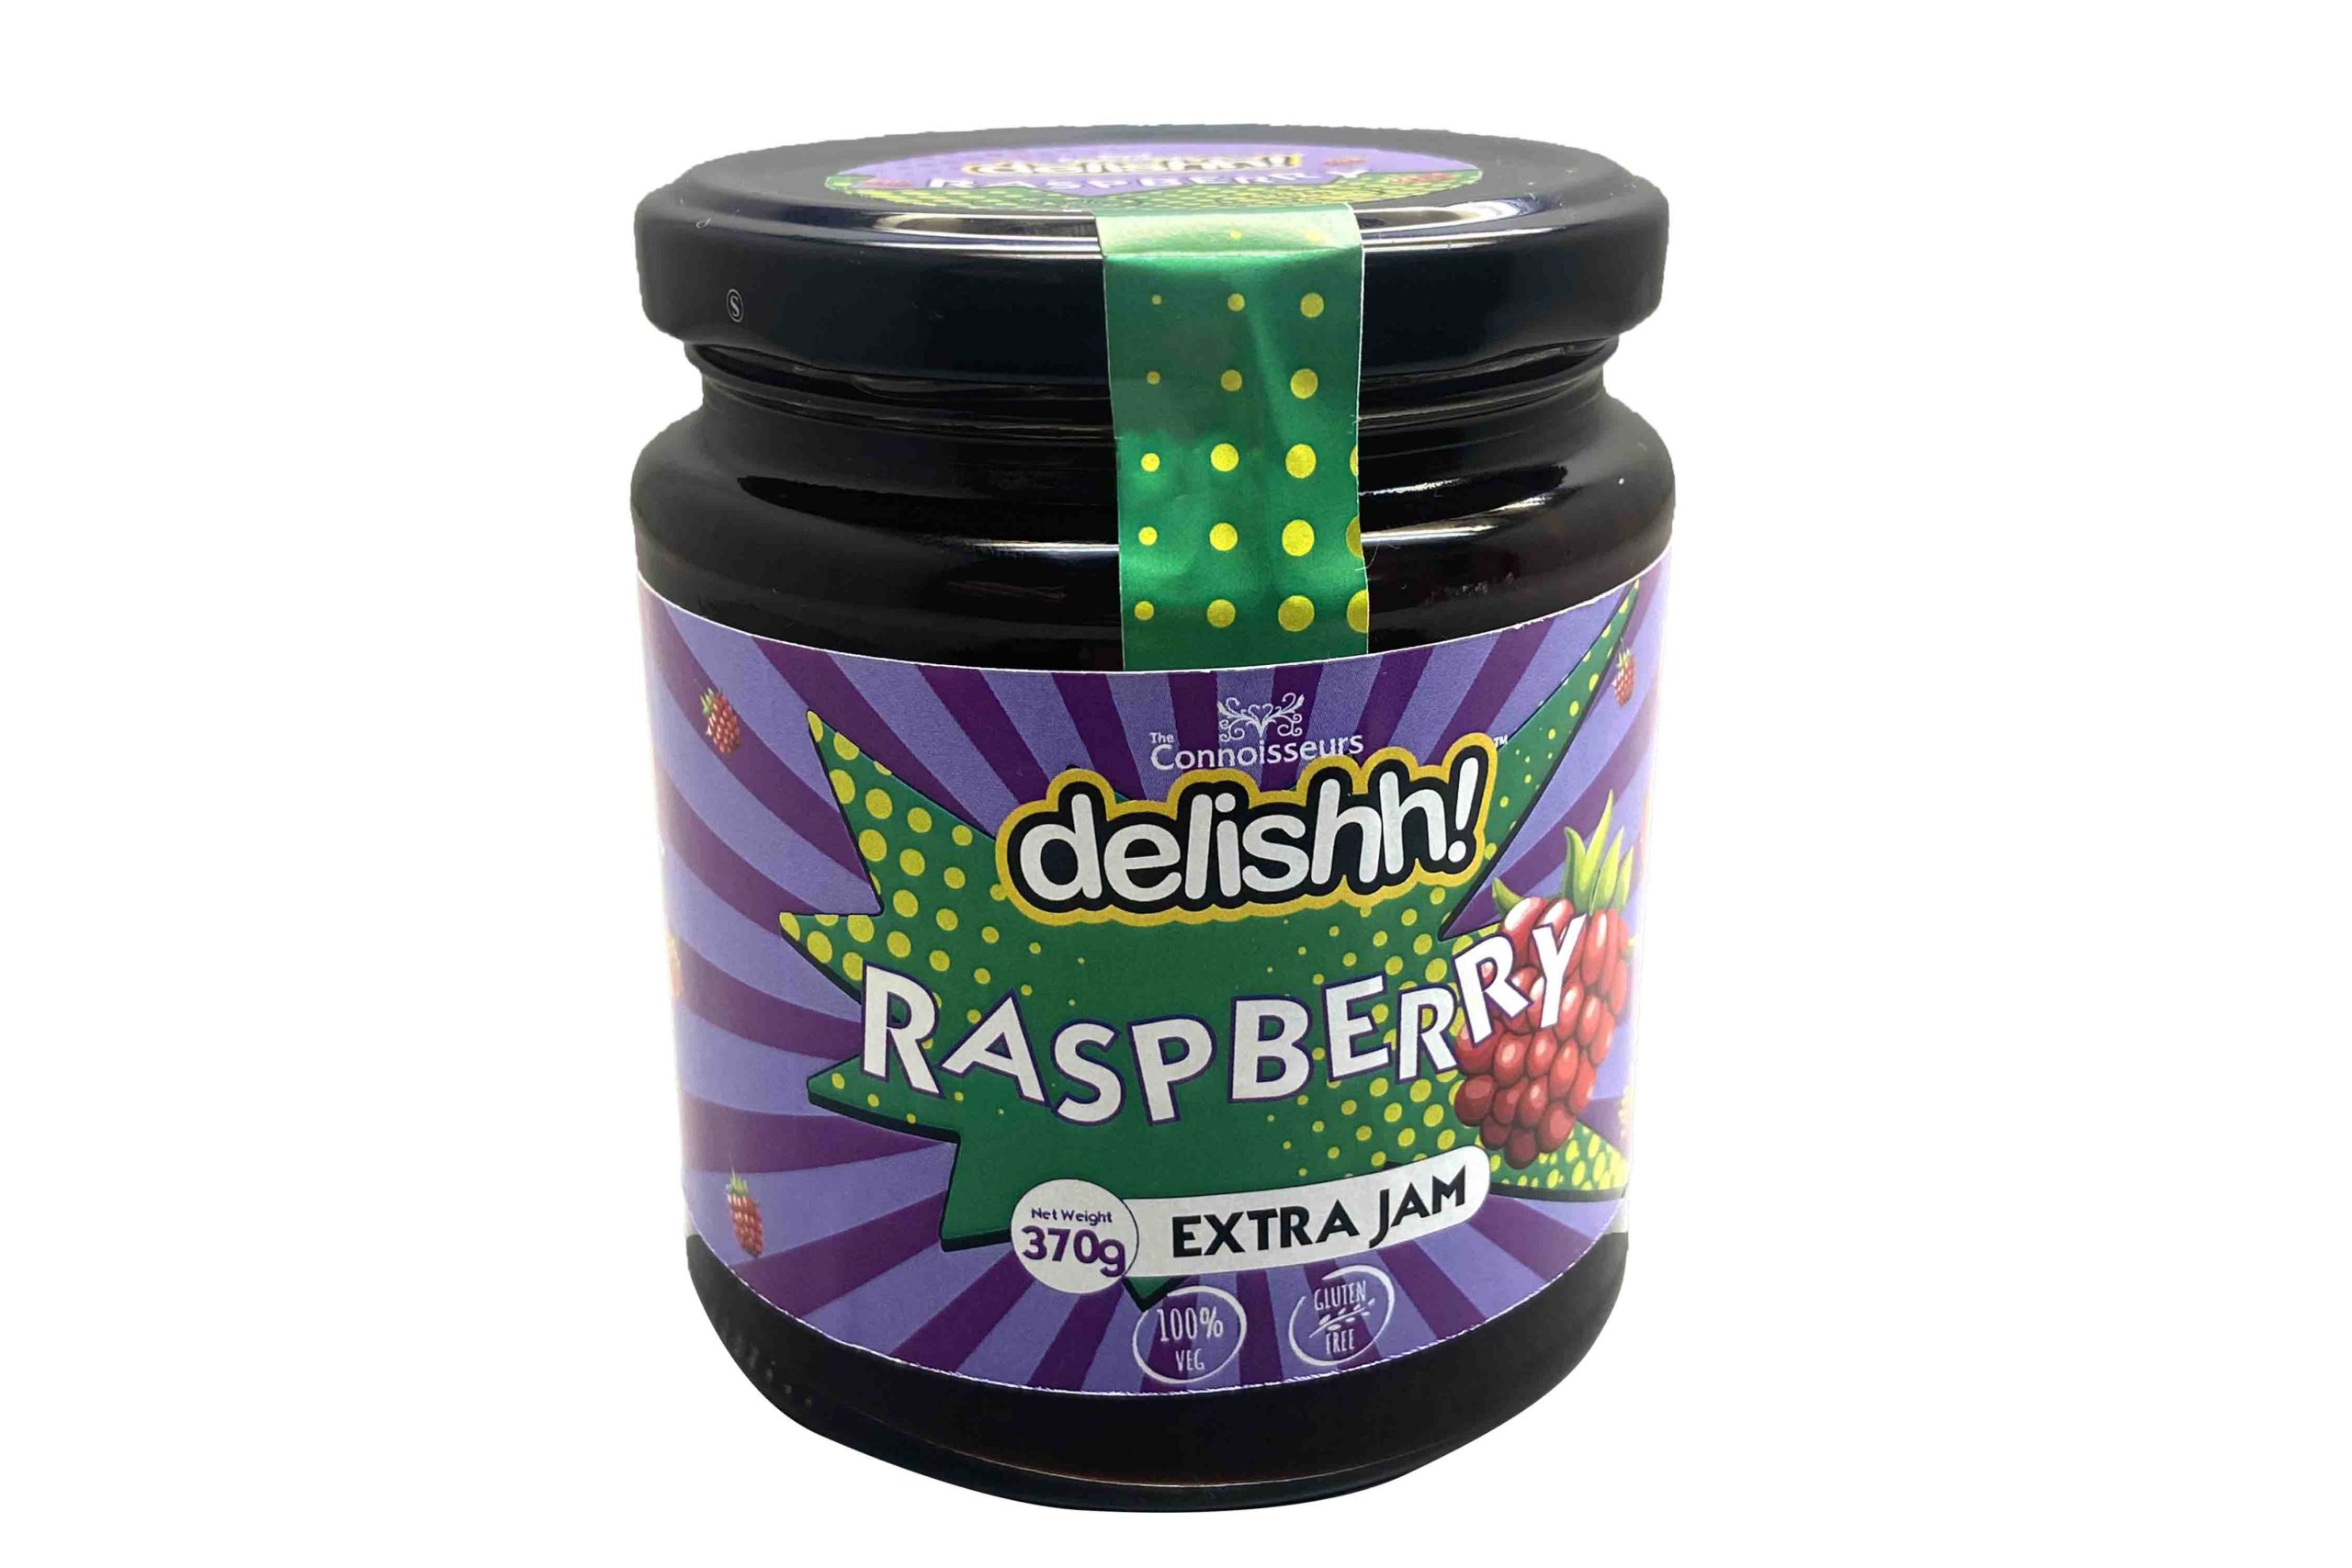 Delishh Raspberry Jam